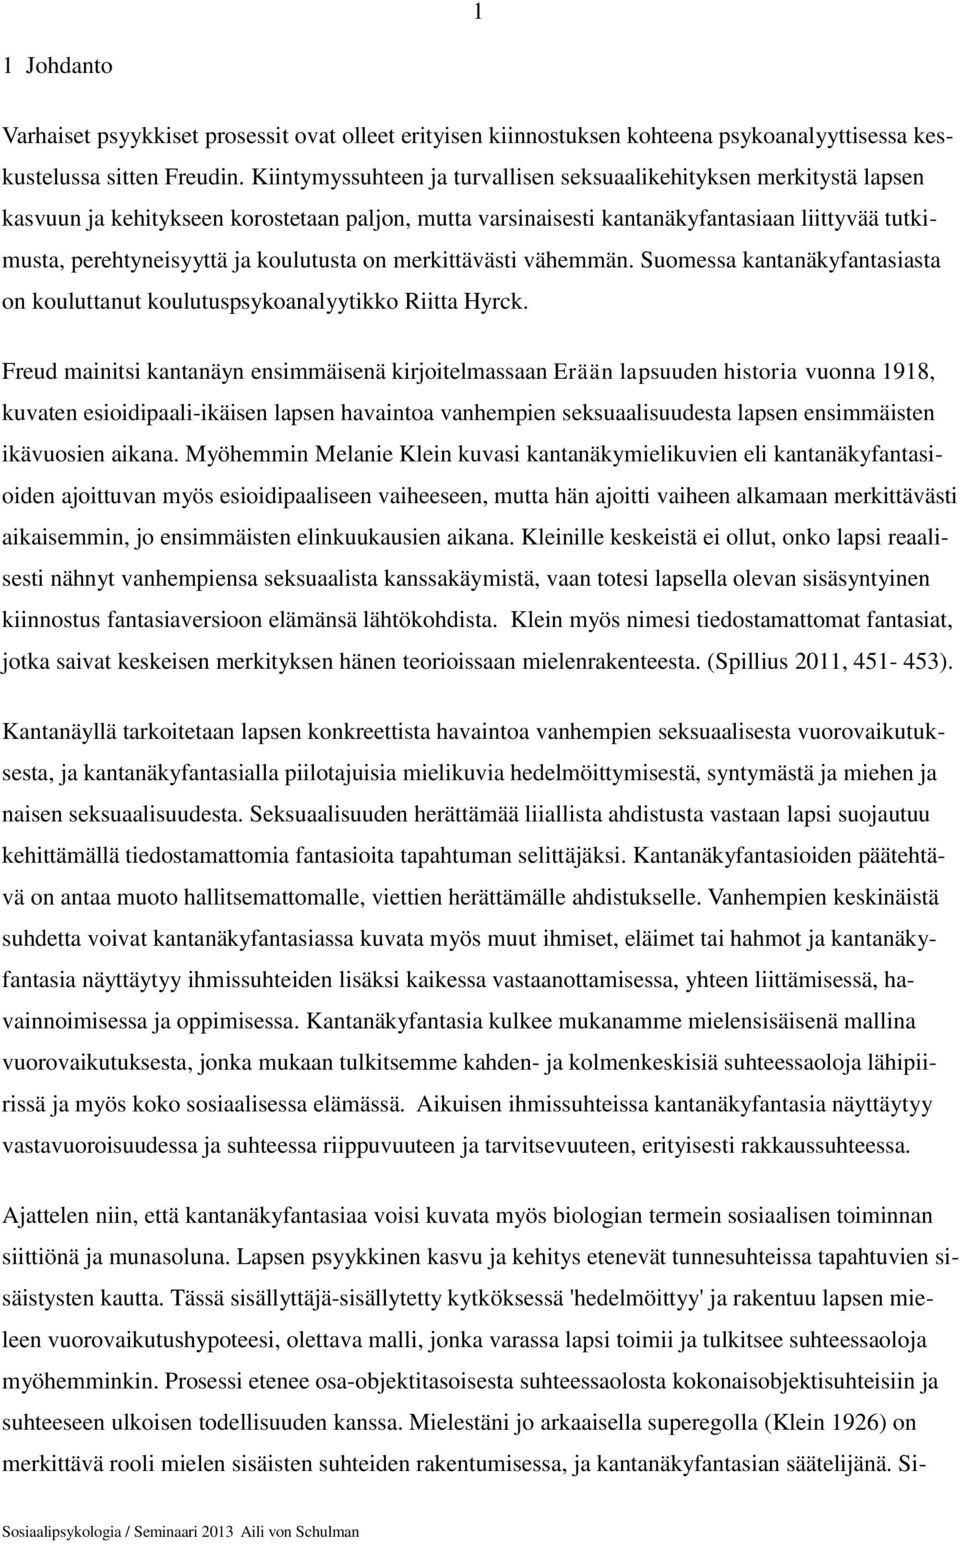 koulutusta on merkittävästi vähemmän. Suomessa kantanäkyfantasiasta on kouluttanut koulutuspsykoanalyytikko Riitta Hyrck.